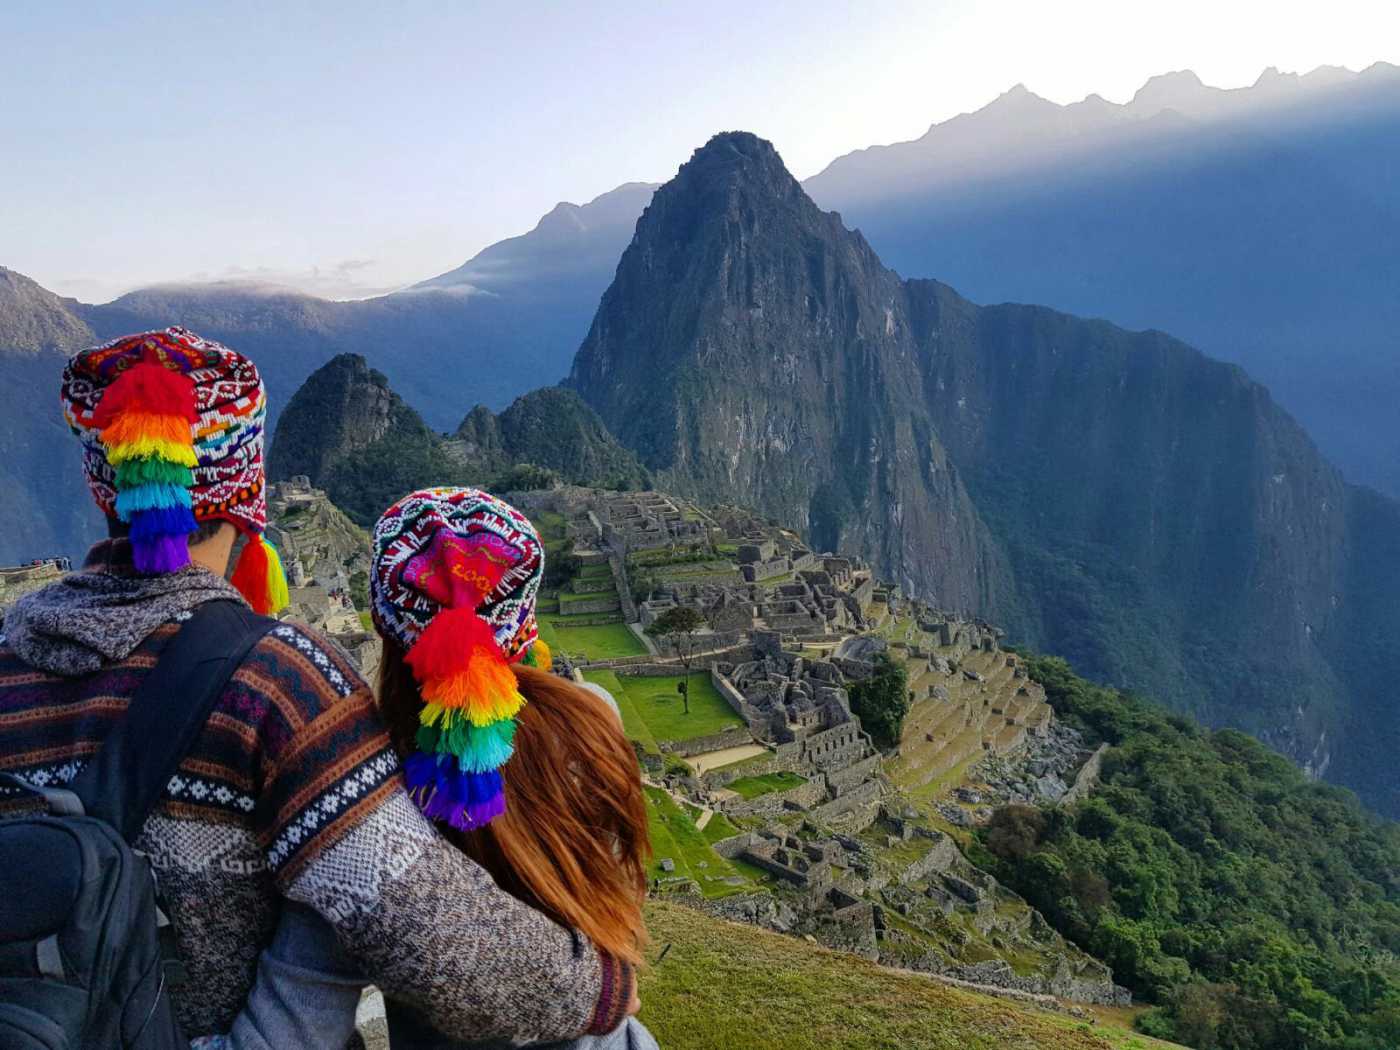 ¿Piensas ir a Cusco? Te armamos el city tour en la ciudad del inca